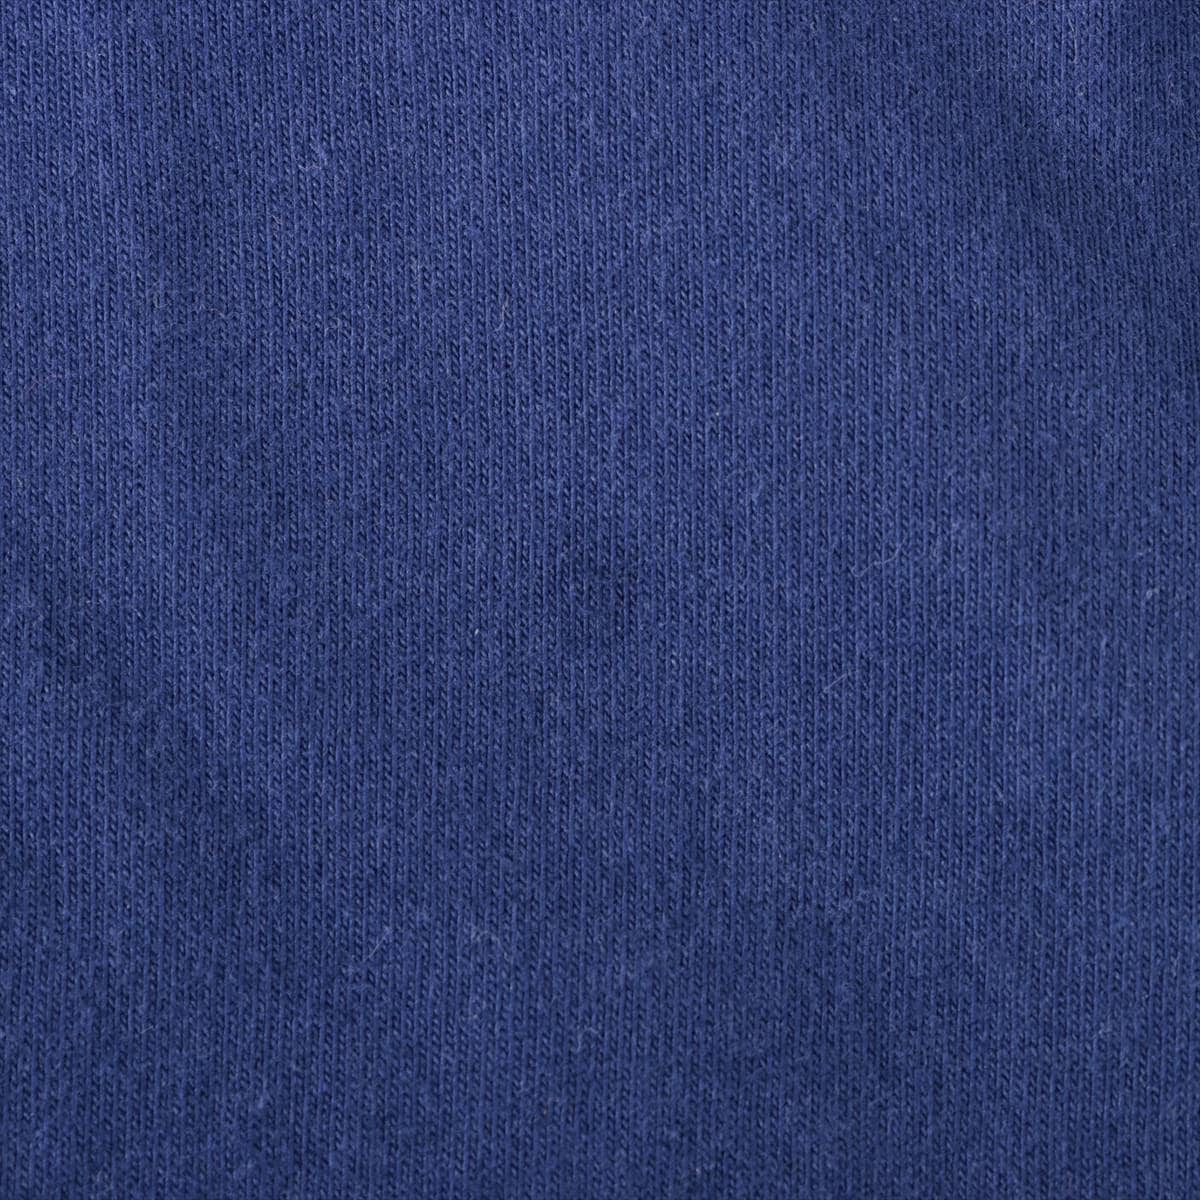 バレンシアガ 20AW コットン Tシャツ M ユニセックス ブルー  612966